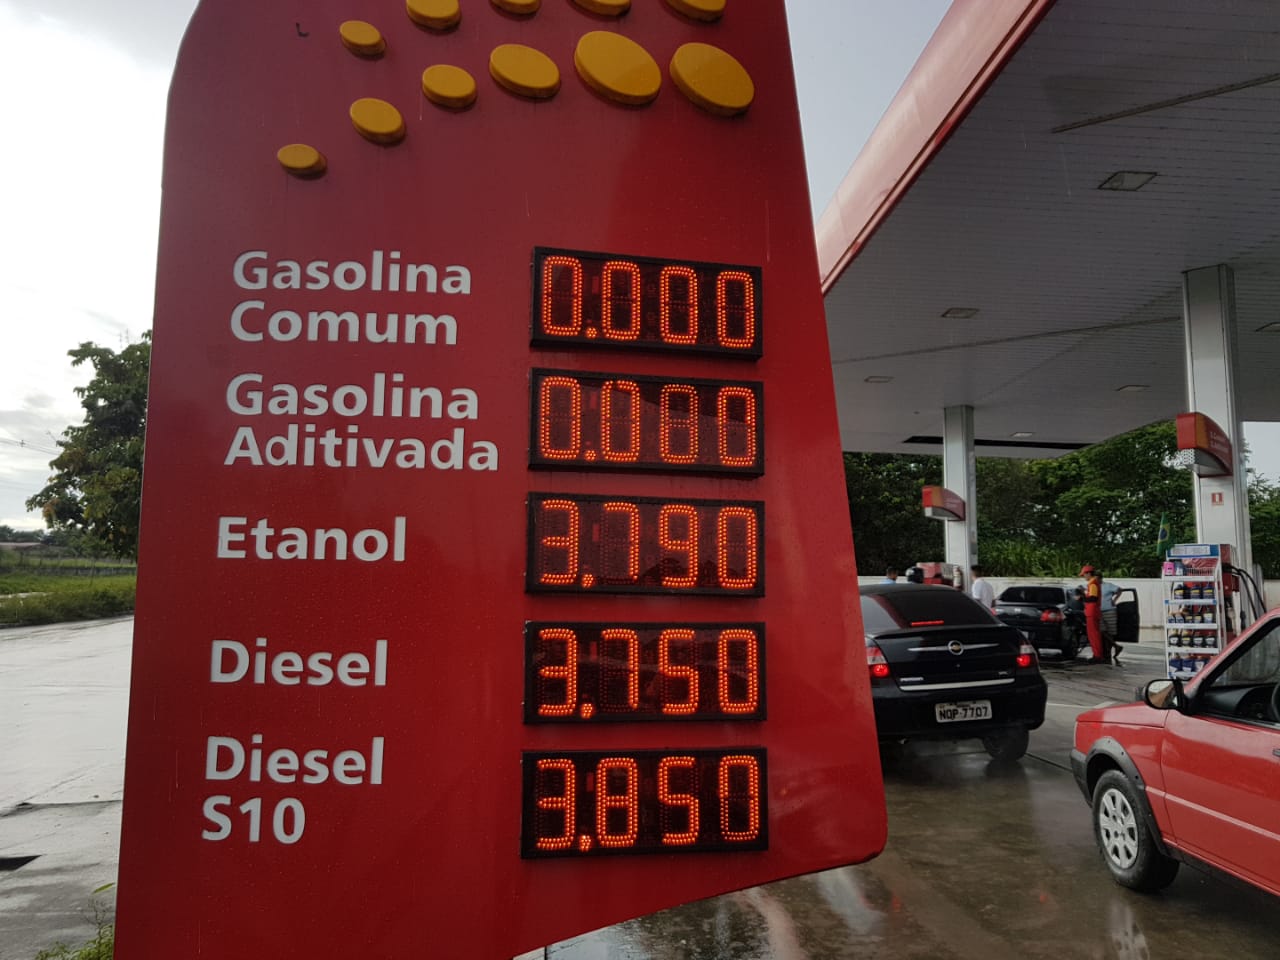 Procon AM divulga postos que aumentaram gasolina irregularmente em Manaus